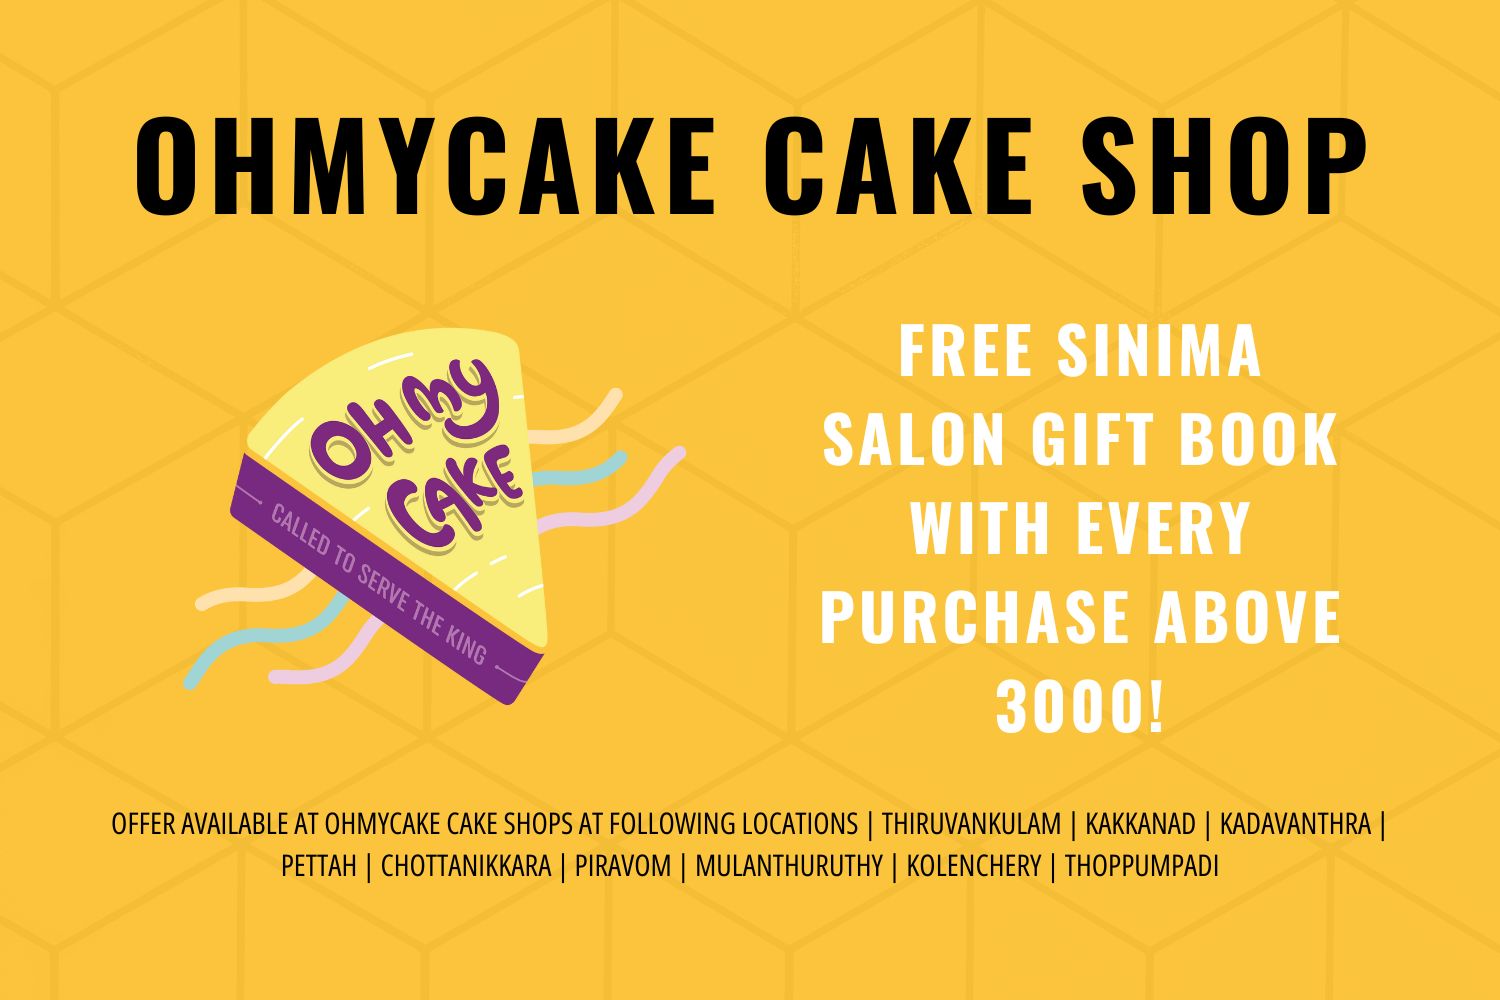 OhMyCake partnership with SINIMA Salon Kochi